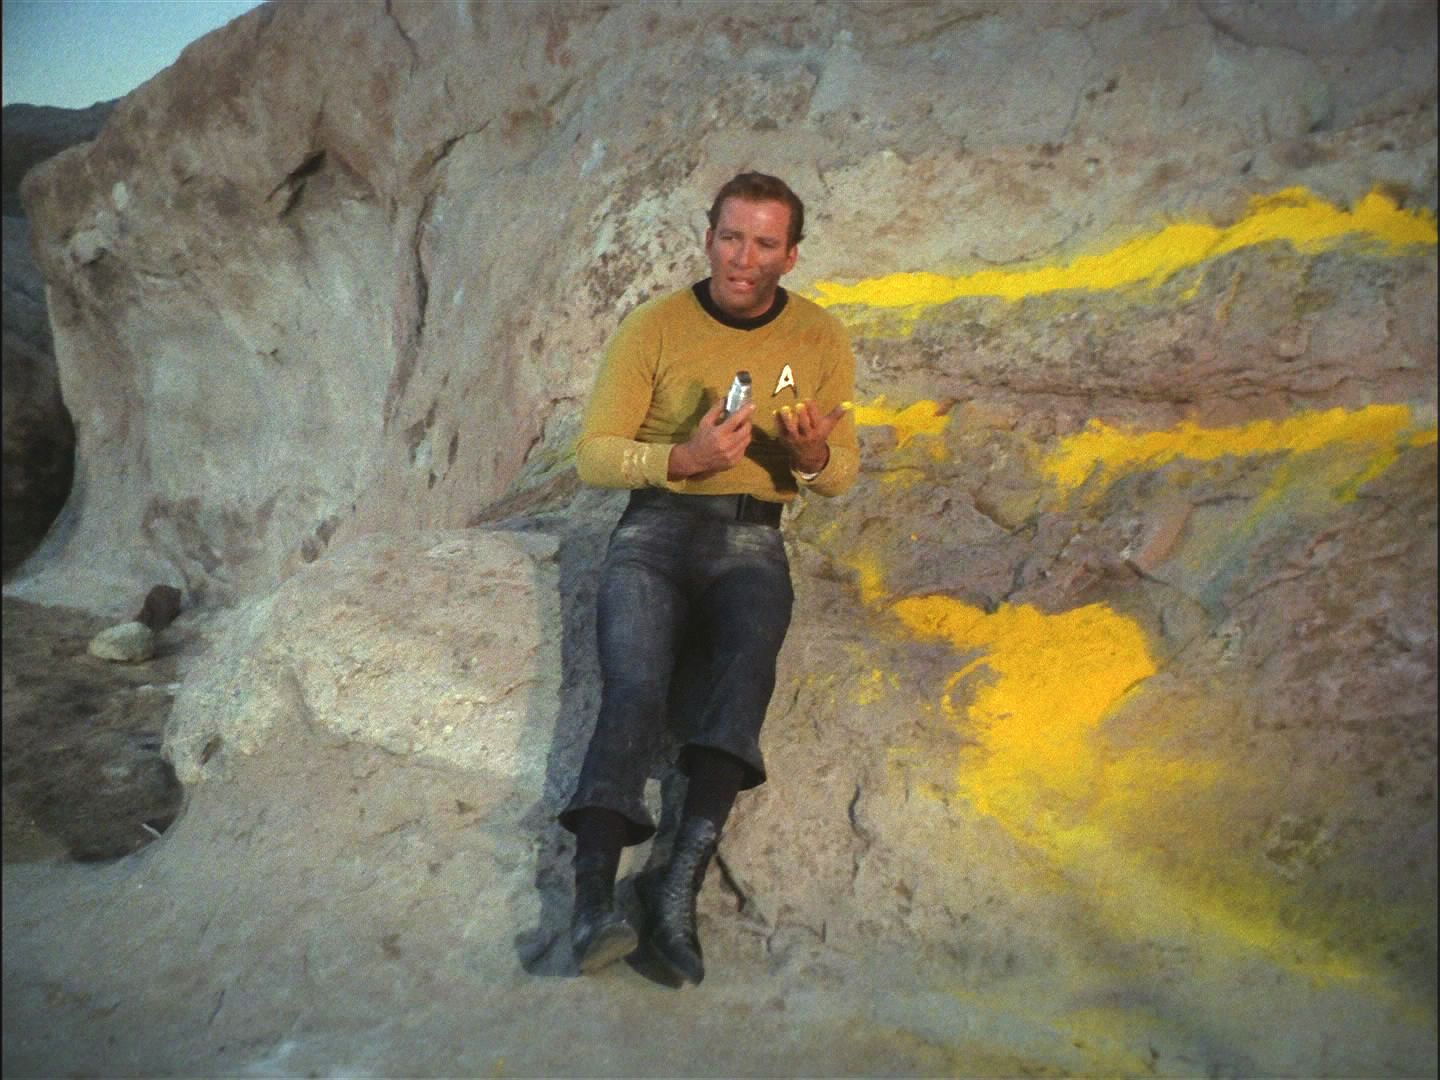 Kirk se skrýval v horách a přitom si všímal věcí kolem sebe. Našel diamanty, pak síru, dusičnan draselný i uhlí. Uvědomil si, že má vše potřebné k výrobě střelného prachu.